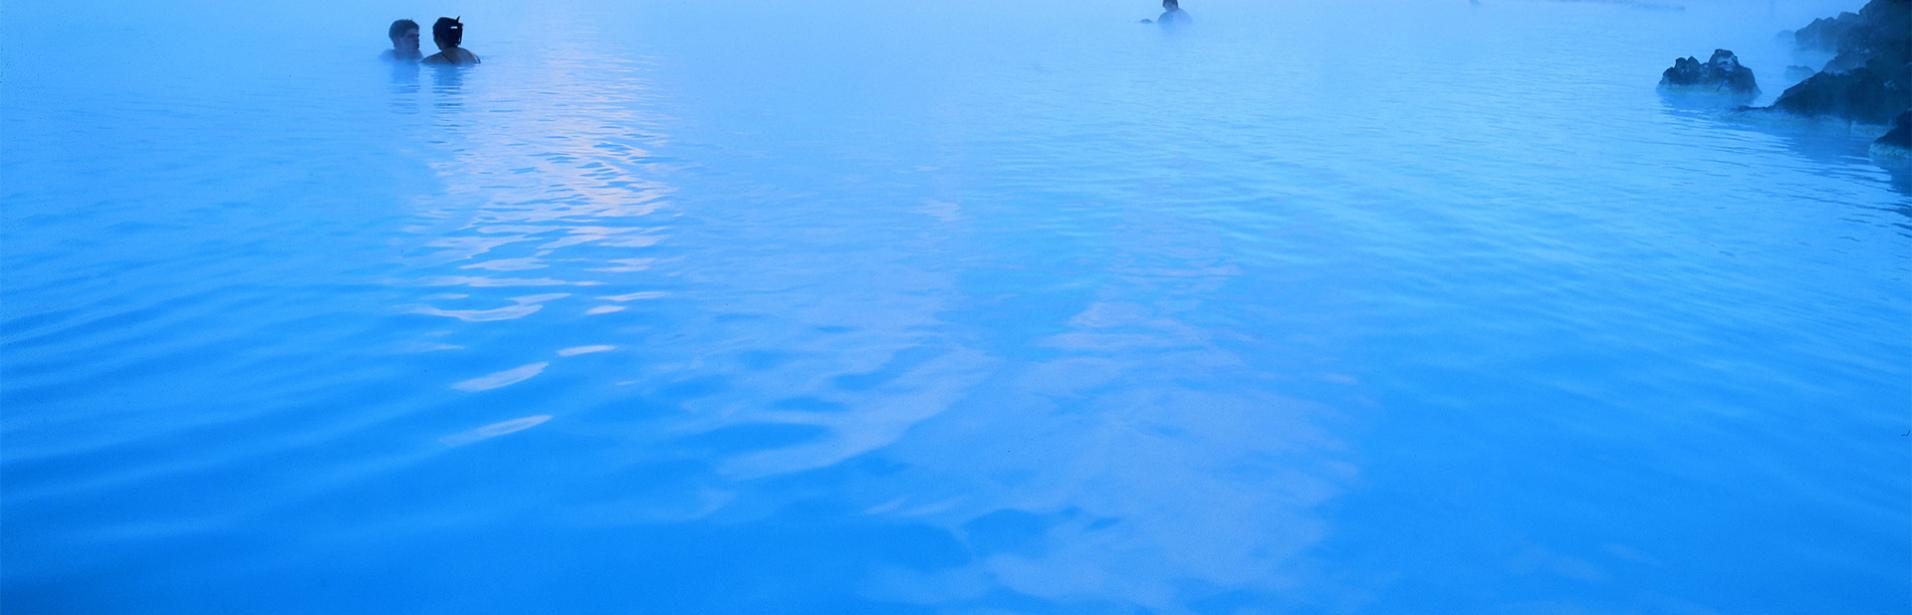 blå lagunen, island